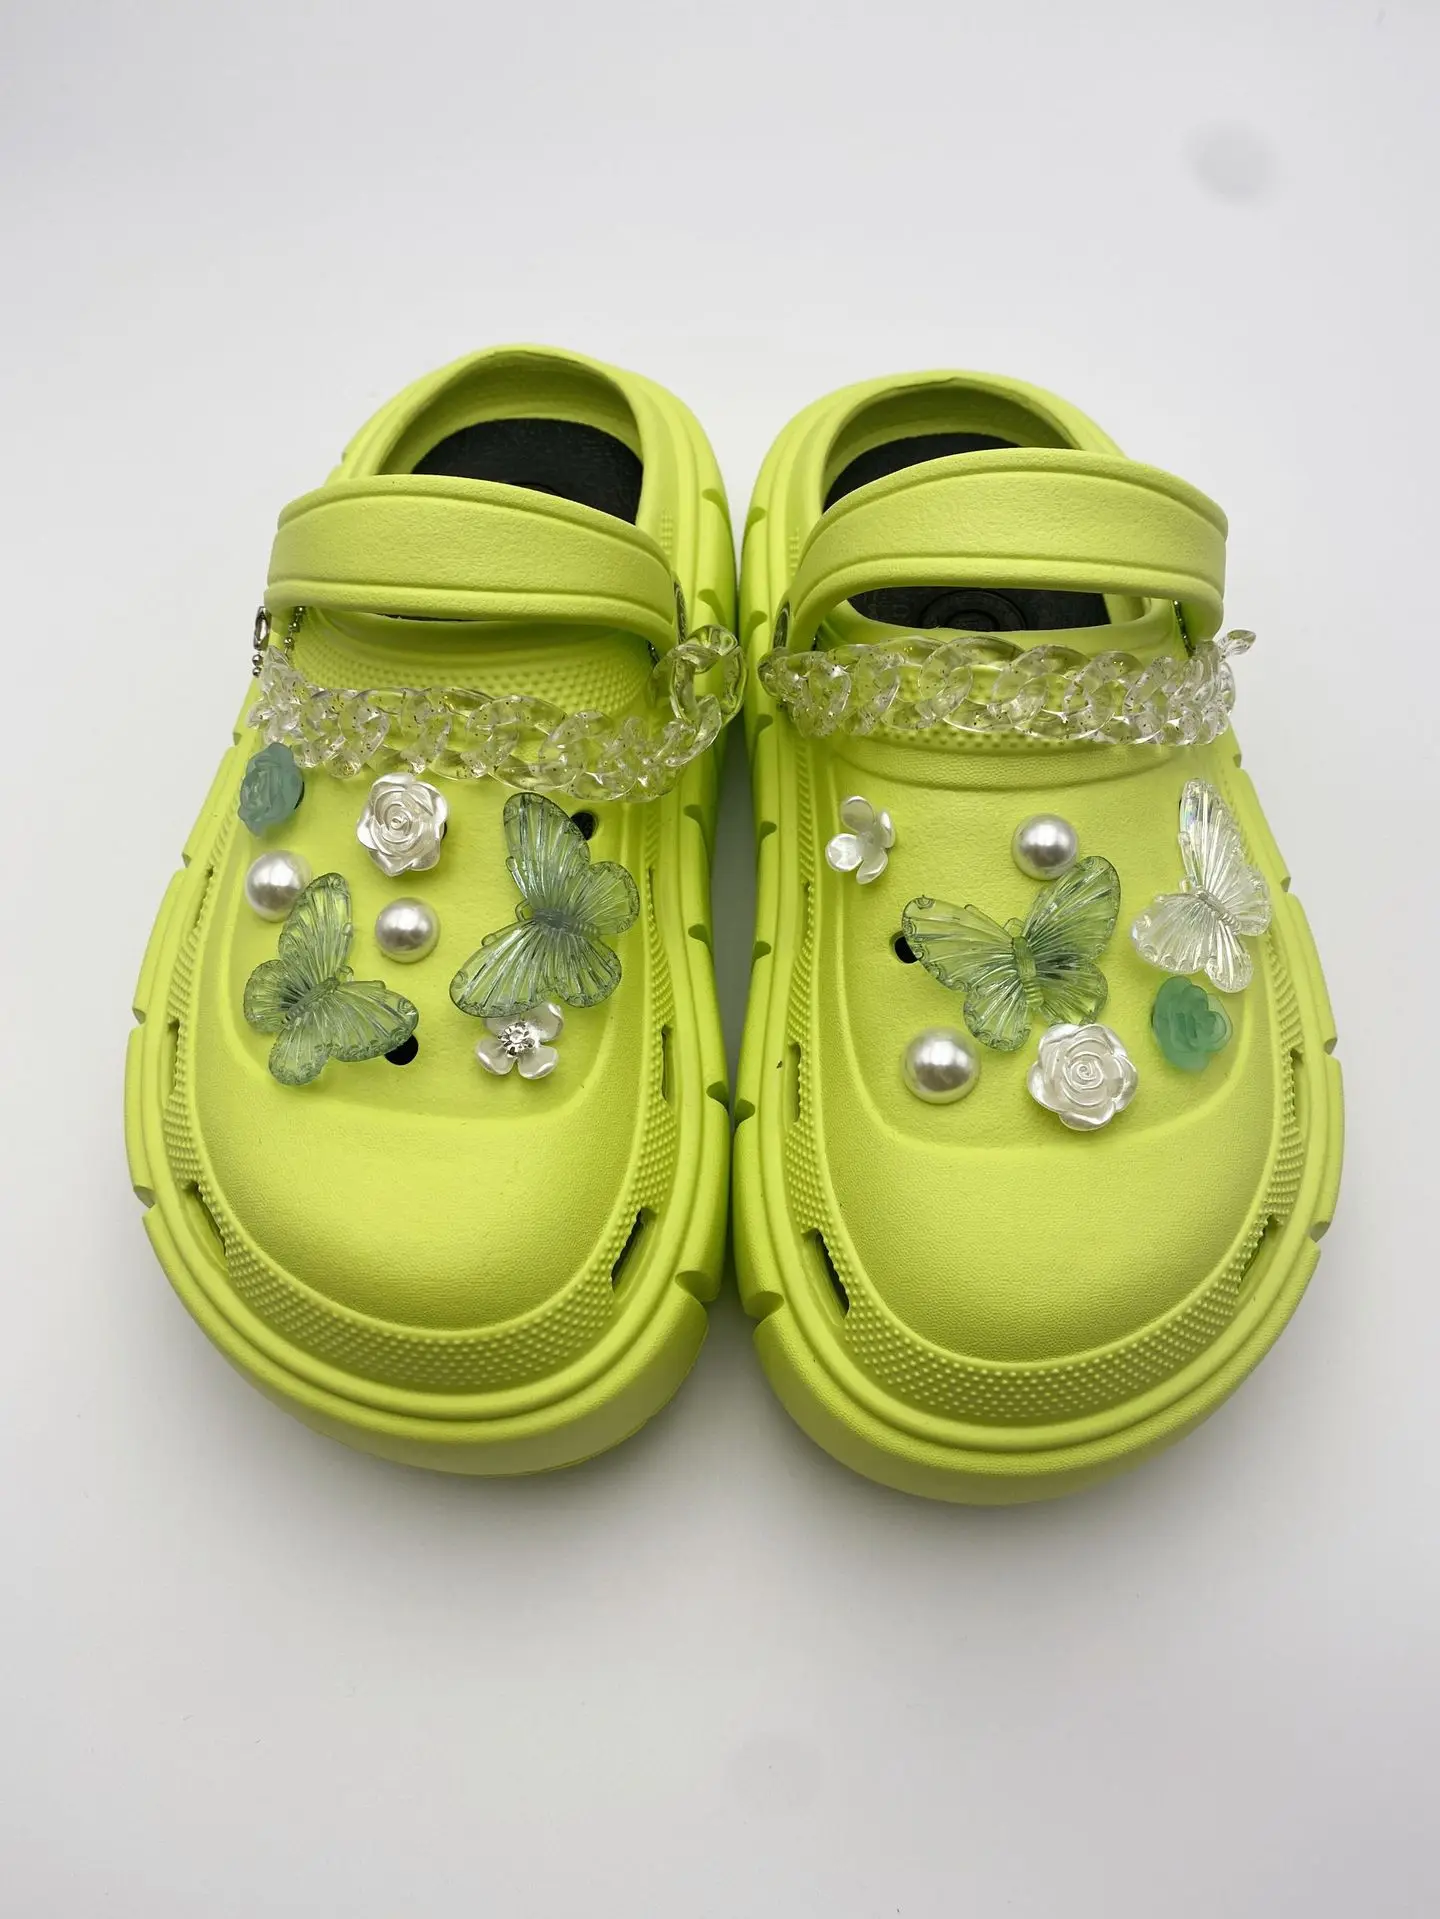 1pcs Bling Metal Croc Charm Luxury Gibits Snowflake Camellia Shoe Charm  Women Clog Ornament Maple Leaf Garden Sandal Decor - Shoe Decorations -  AliExpress